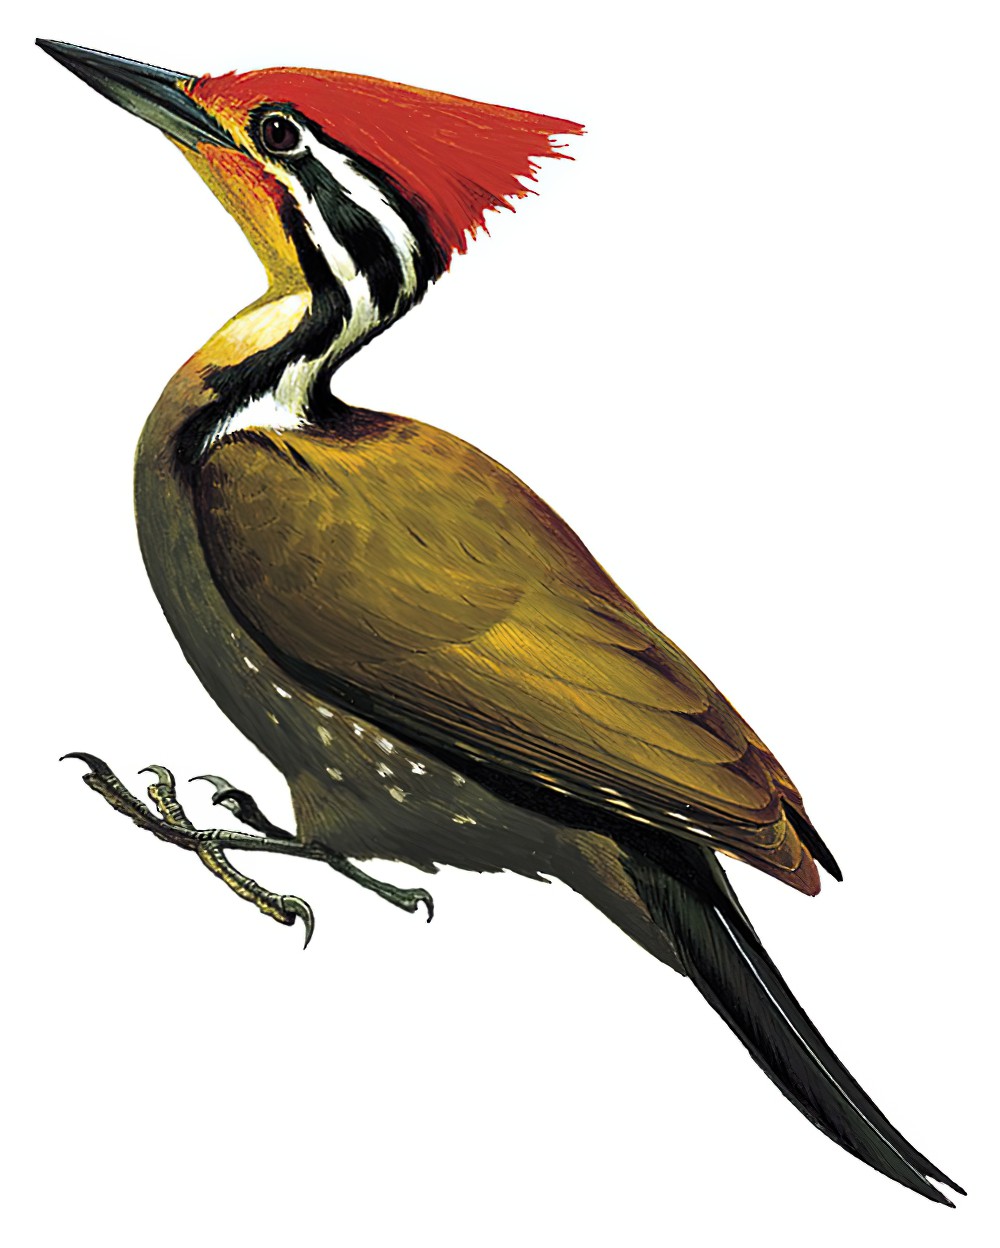 Olive-backed Woodpecker / Dinopium rafflesii